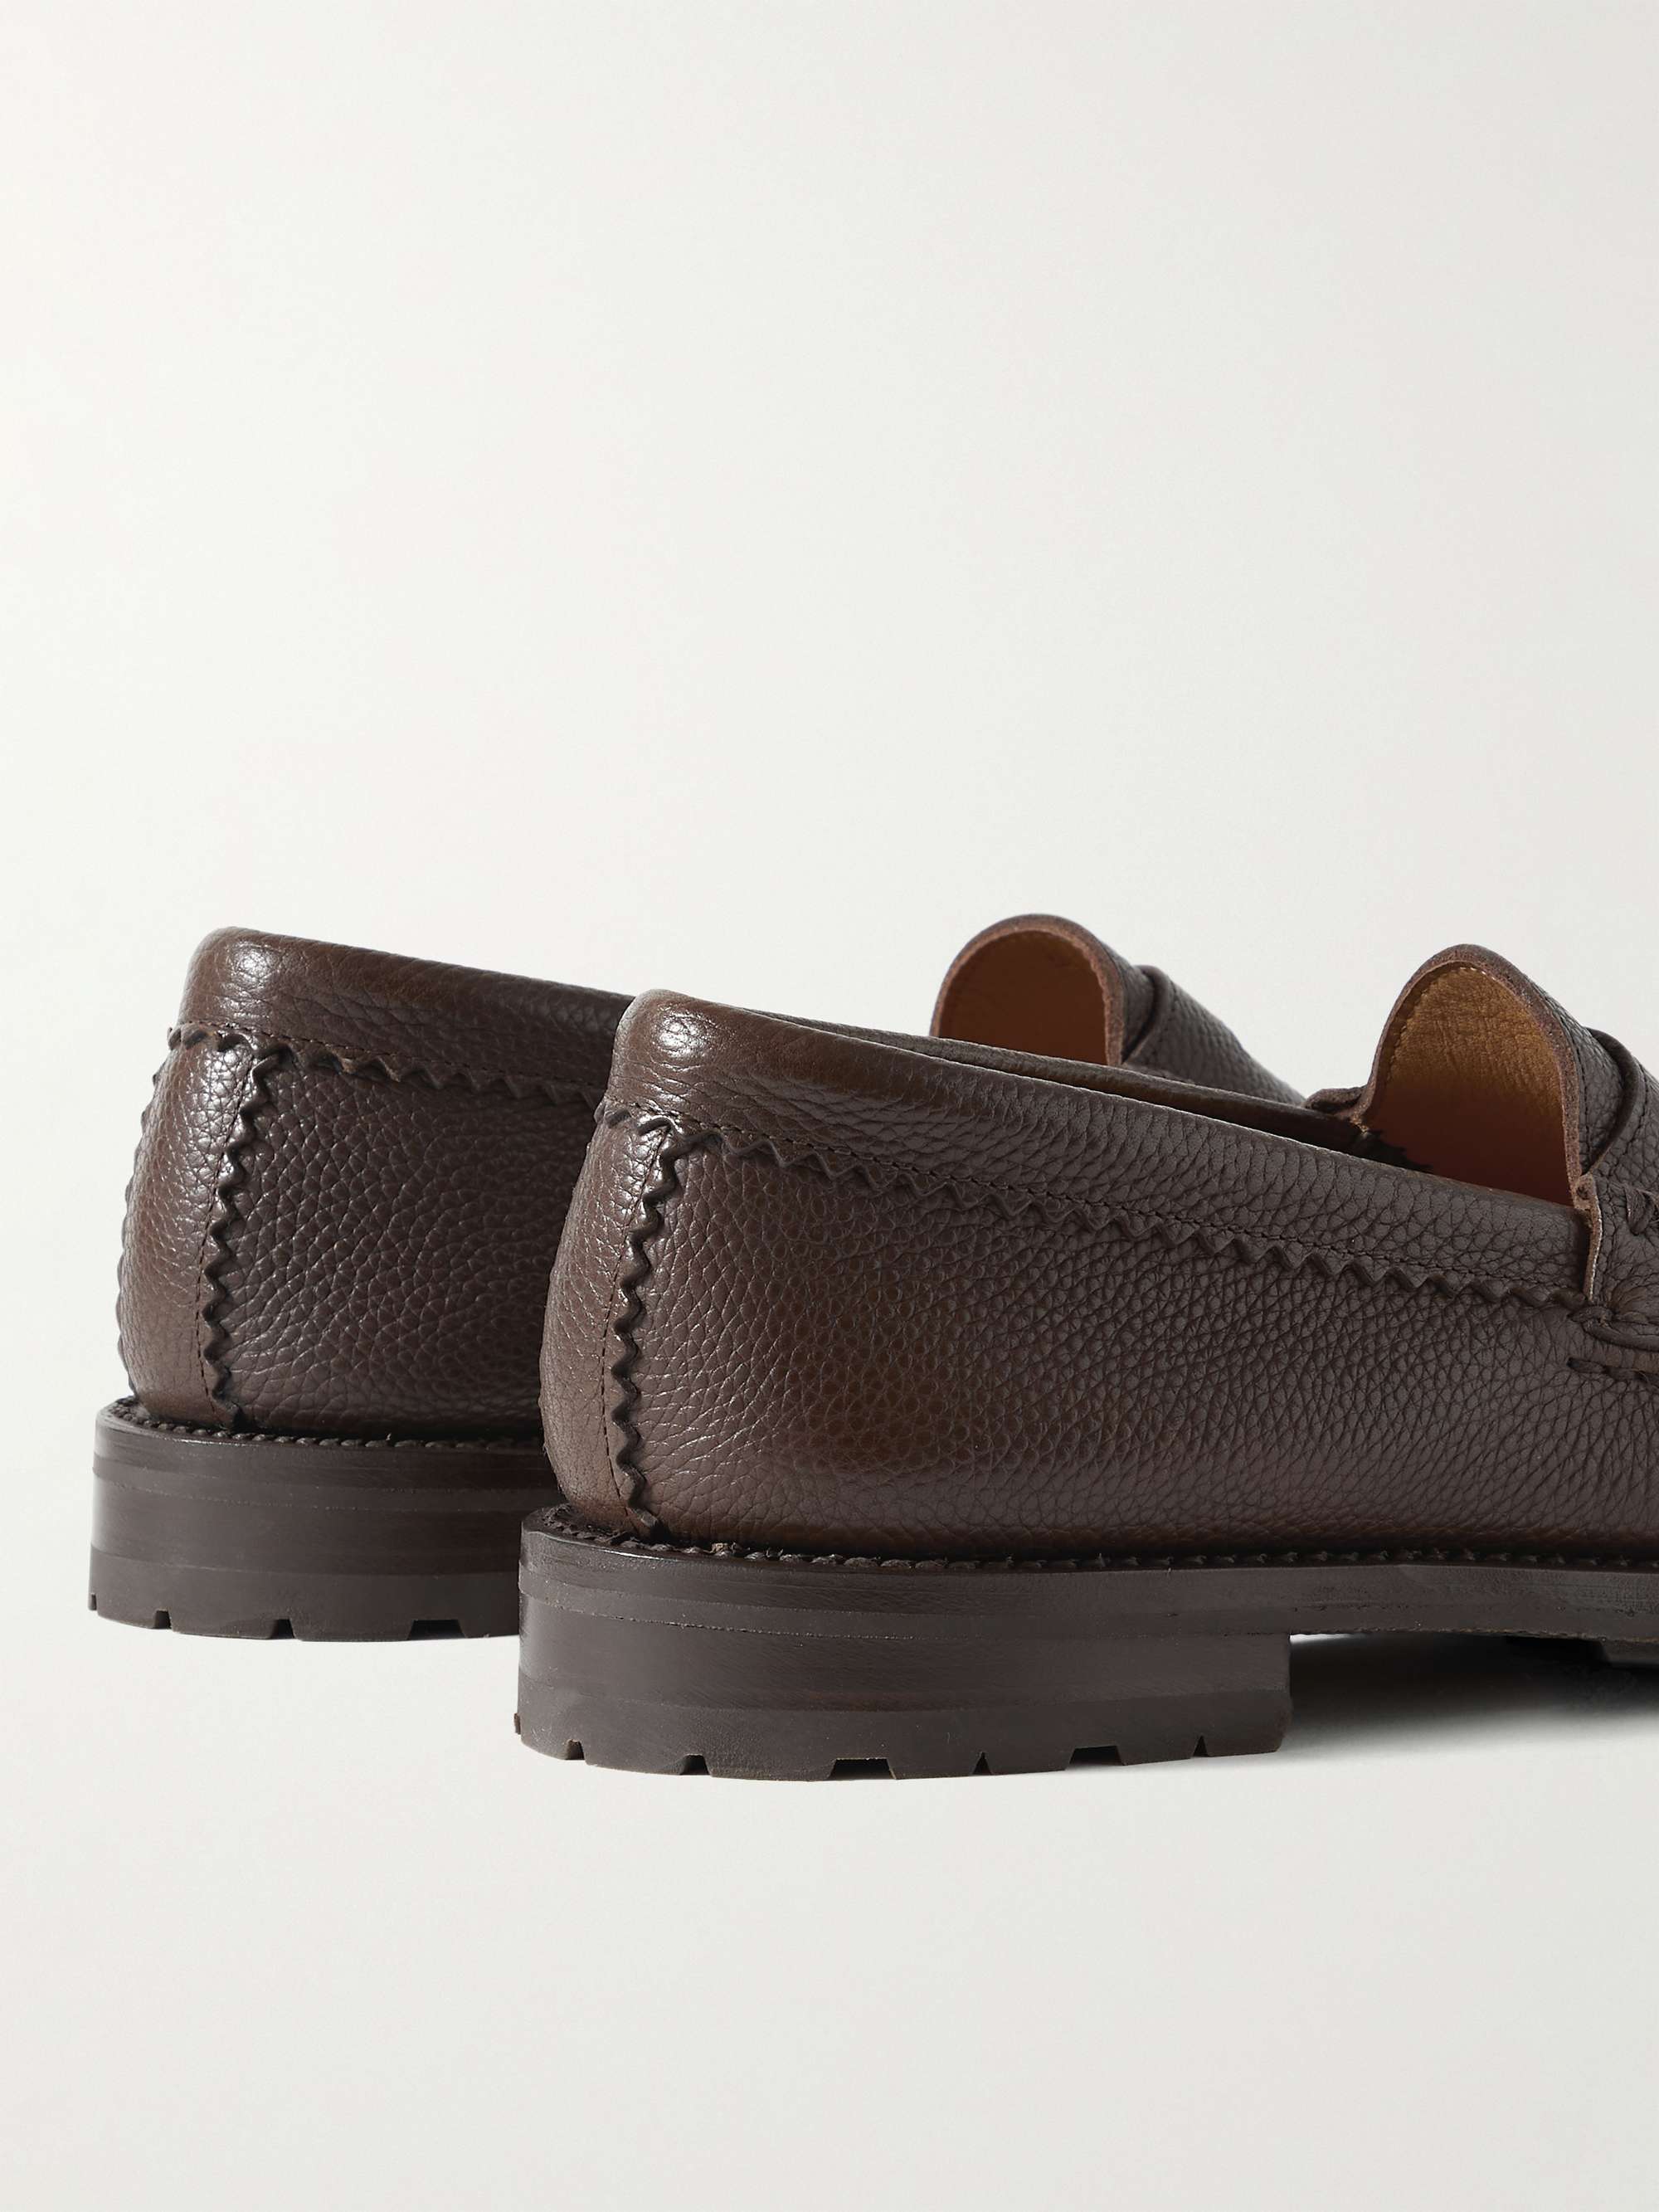 YUKETEN Rob's Full-Grain Leather Penny Loafers for Men | MR PORTER